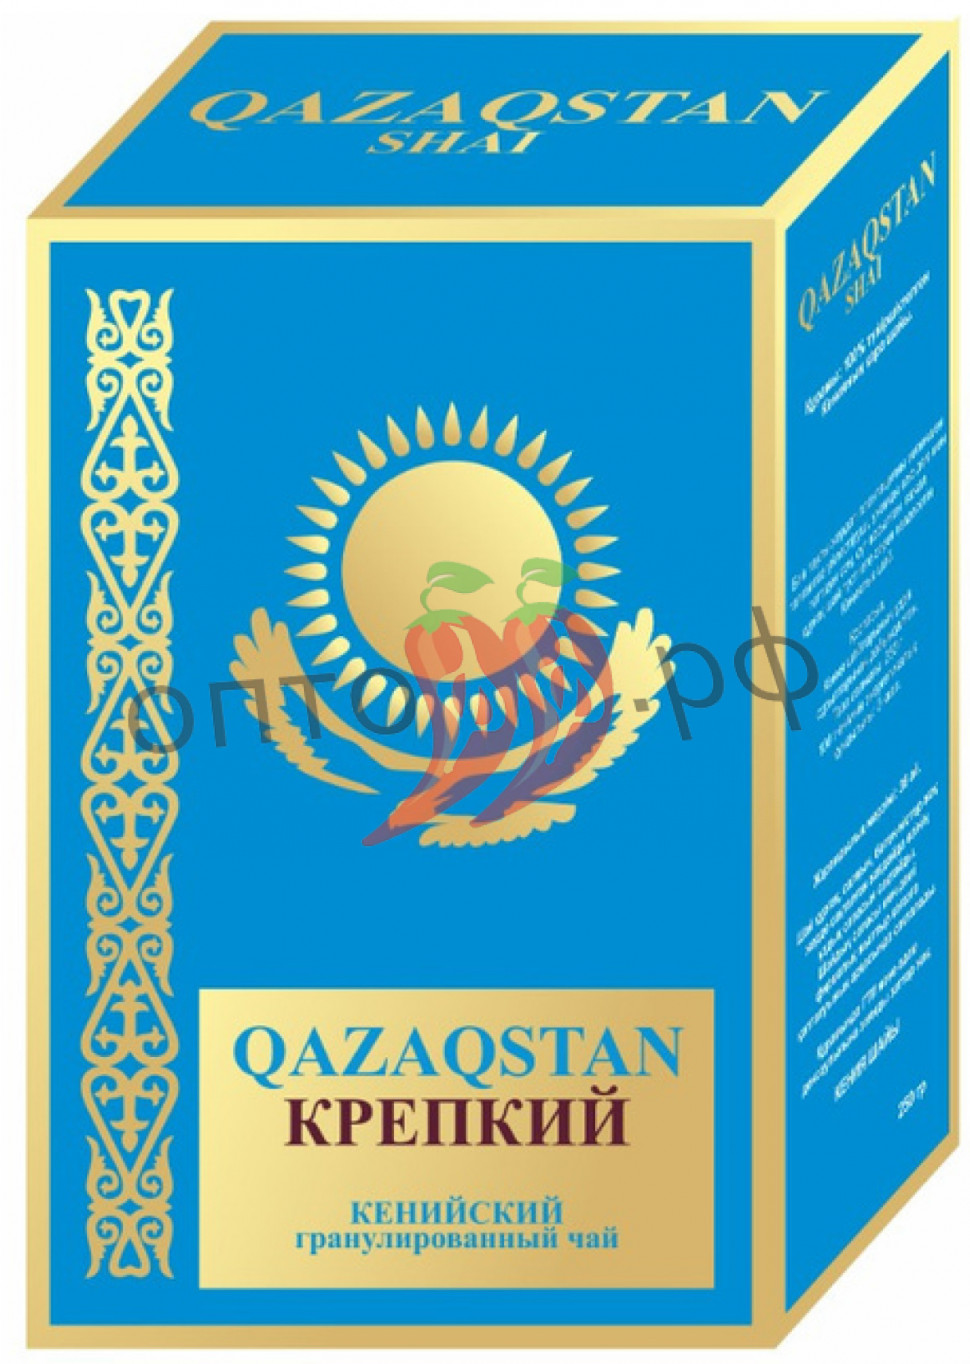 Чай Qazagstan (голубая пачка) 250гр КРЕПКИЙ кения гранулир (кор*60)